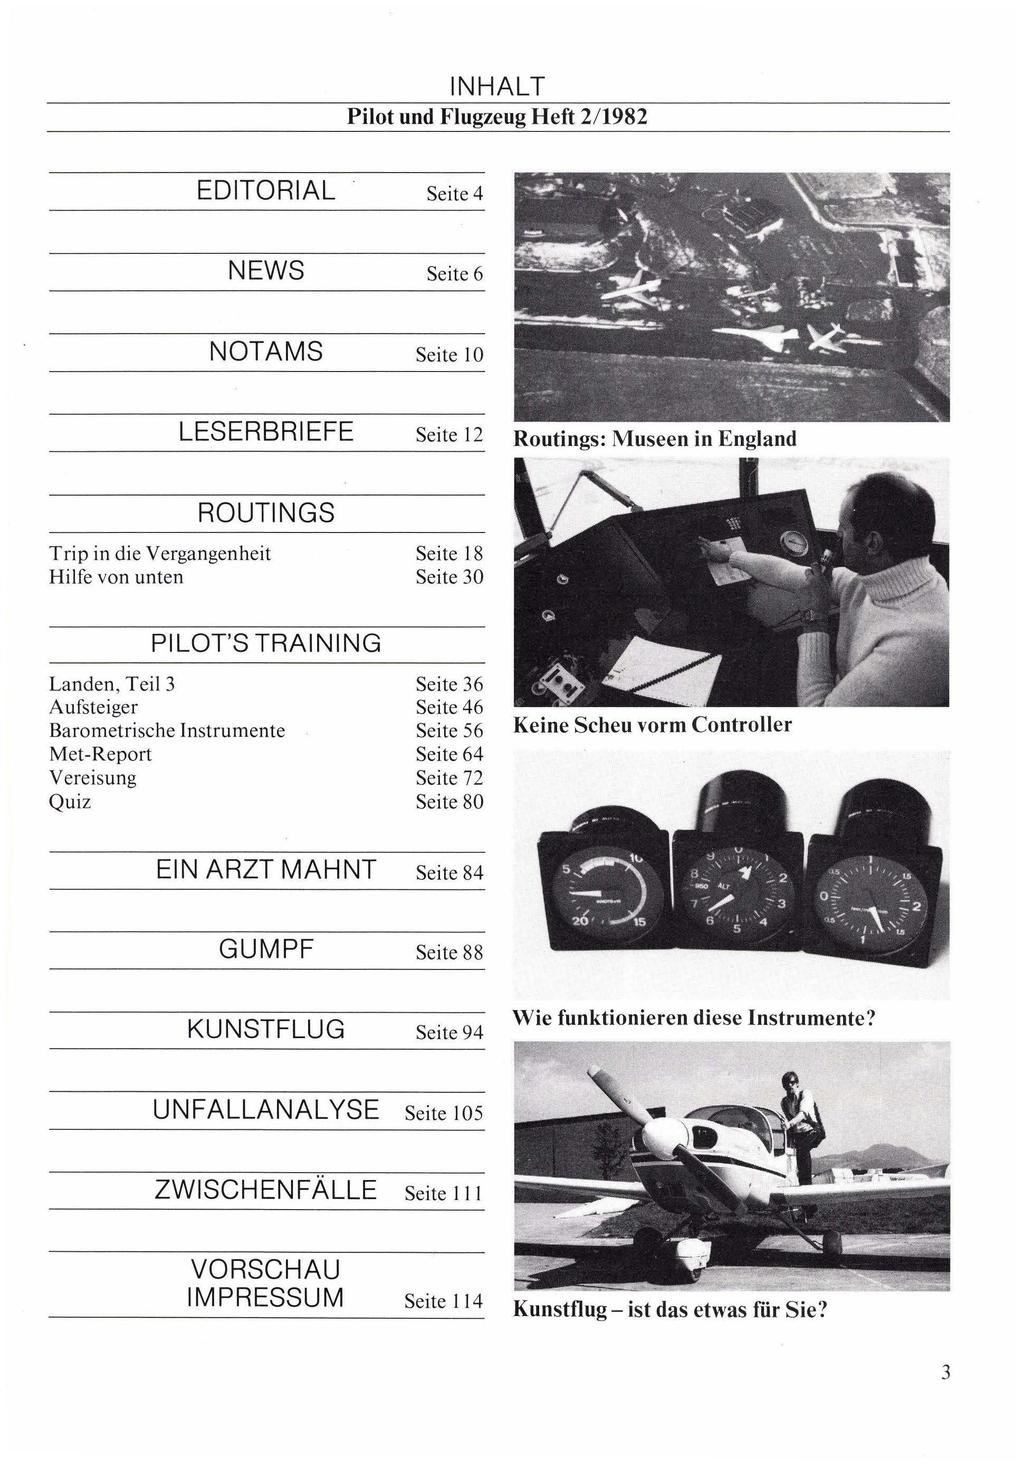 Pilot und Flugzeug Heft 2/1982 EDITORIAL Seite 4 NEWS Seite 6 NOTAMS Seite 10 LESERBRIEFE Seite 12 Routings: Museen in England Trip in die Vergangenheit Seite 18 Hilfe von unten Seite 0 PI LOTS